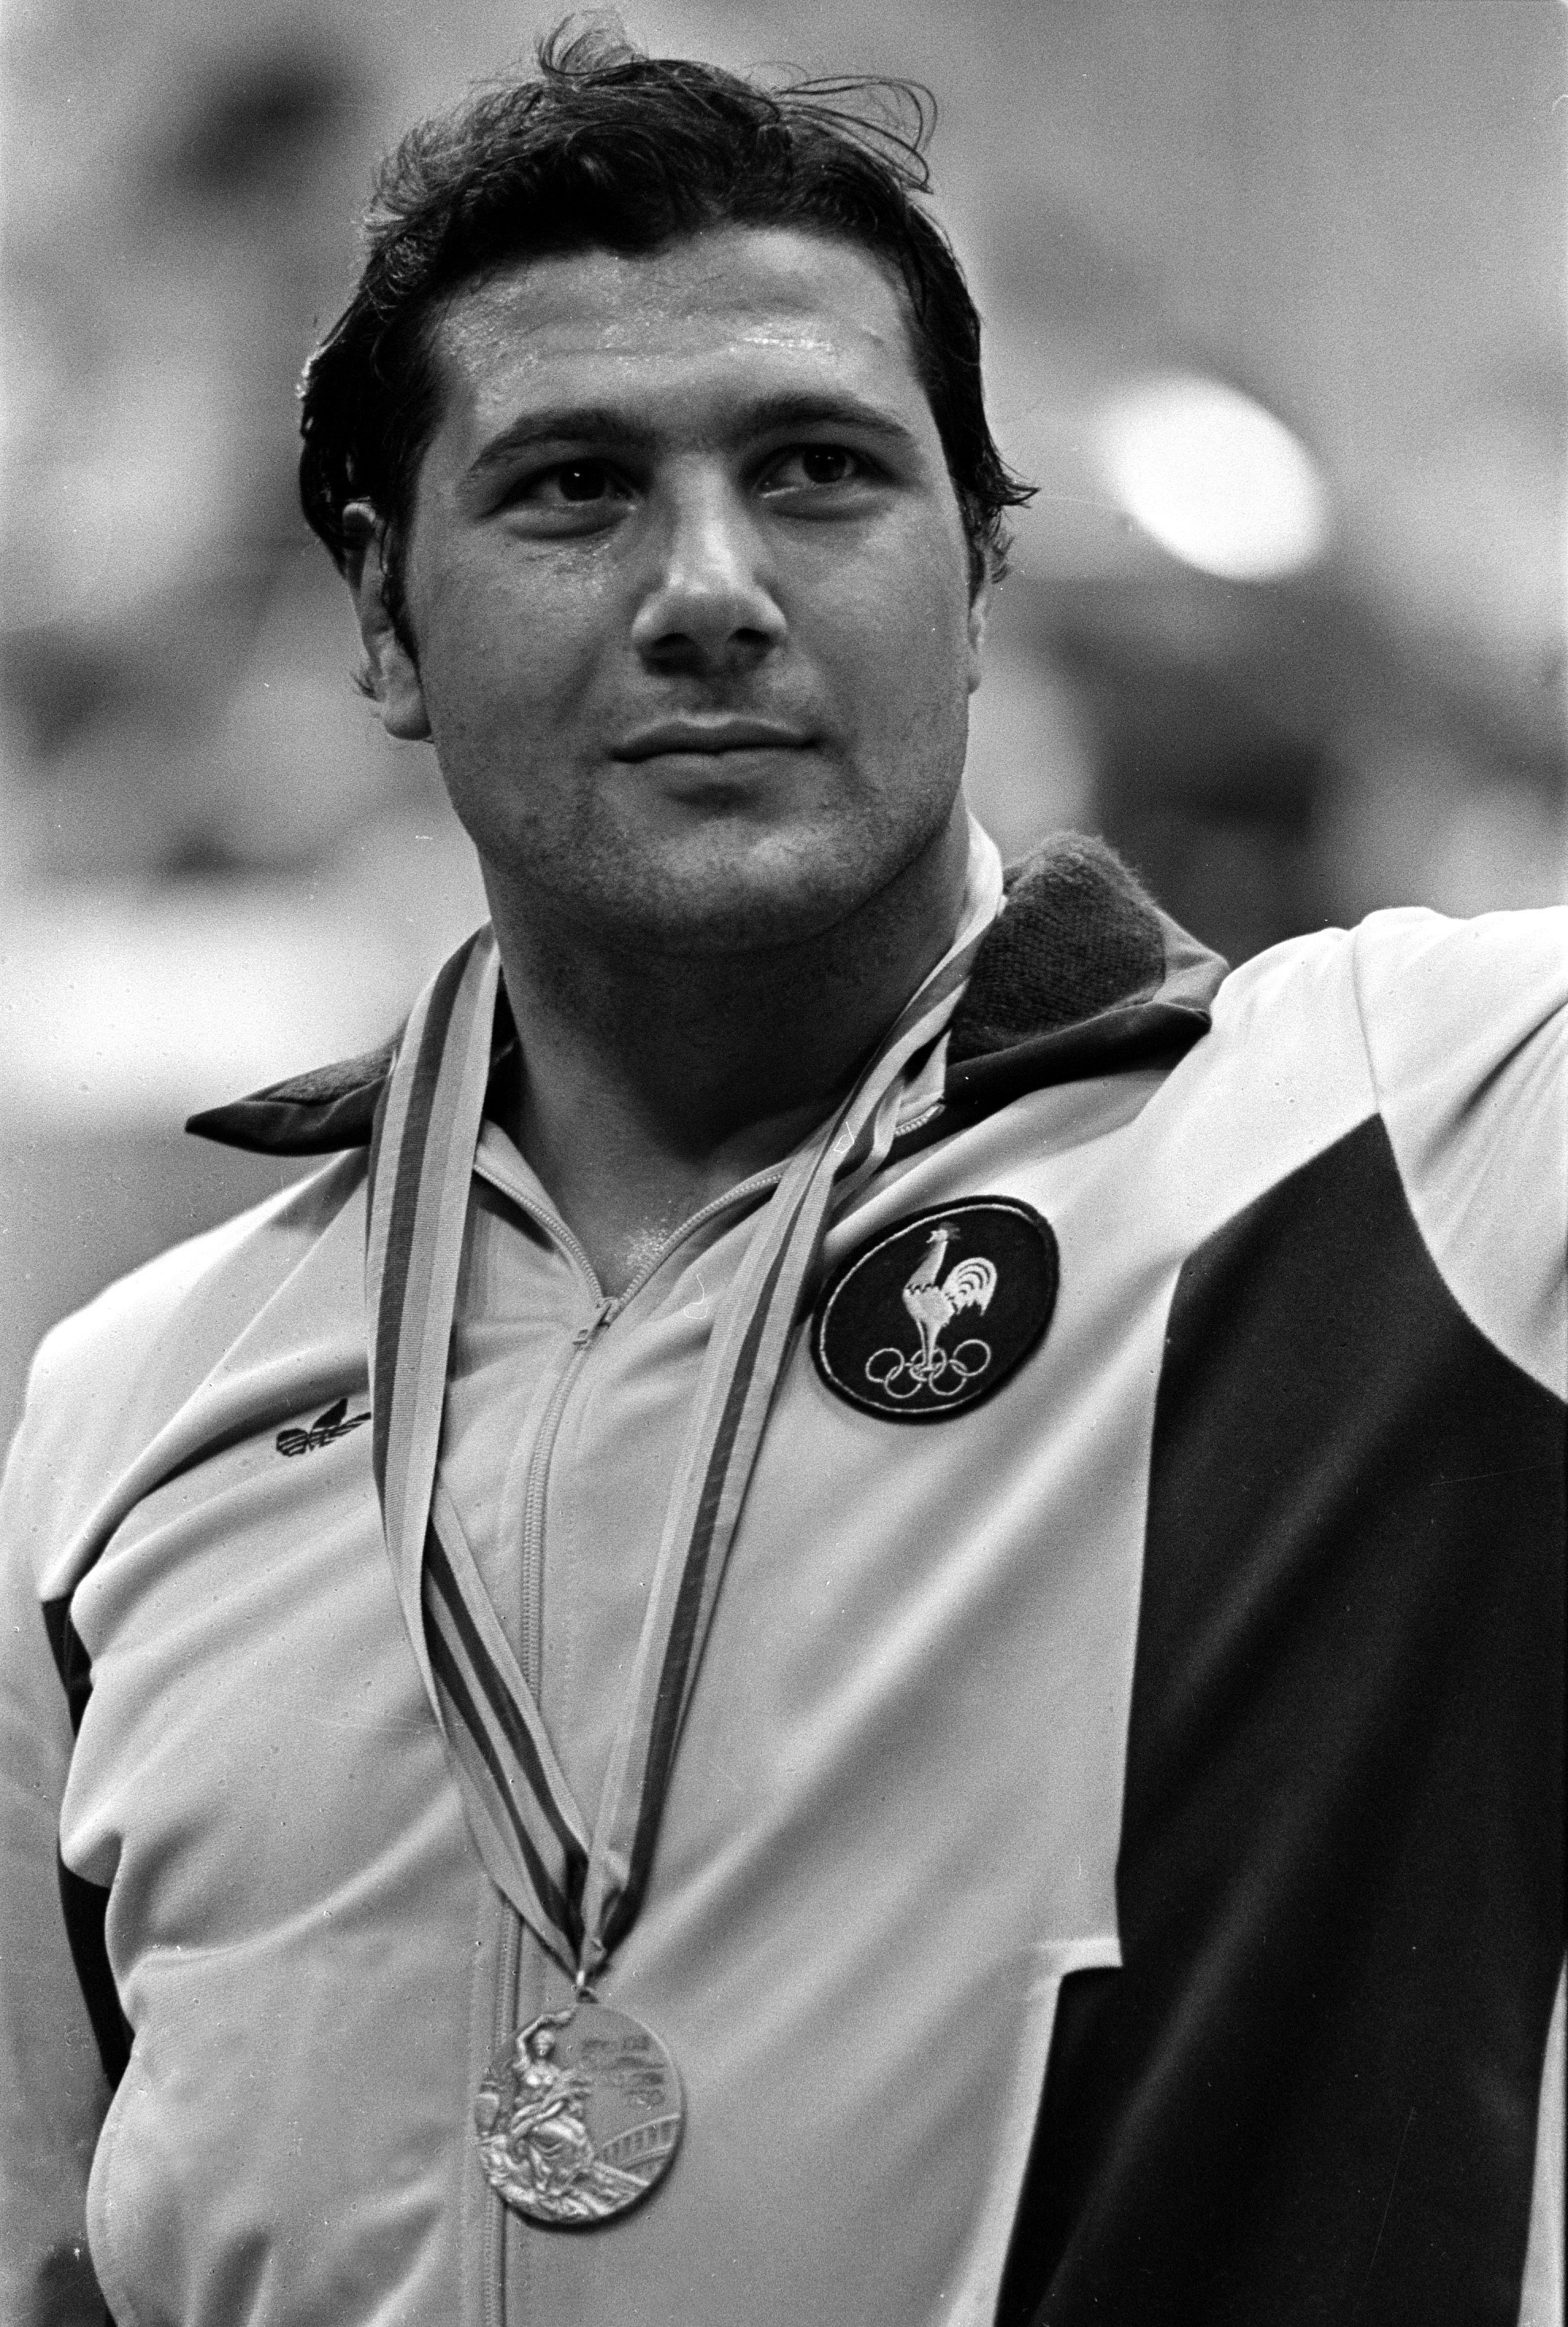 Angelo Parisi - Porte-drapeau de l'Equipe de France lors des Jeux Olympiques de Los Angeles en 1984 - judoka médaillé 